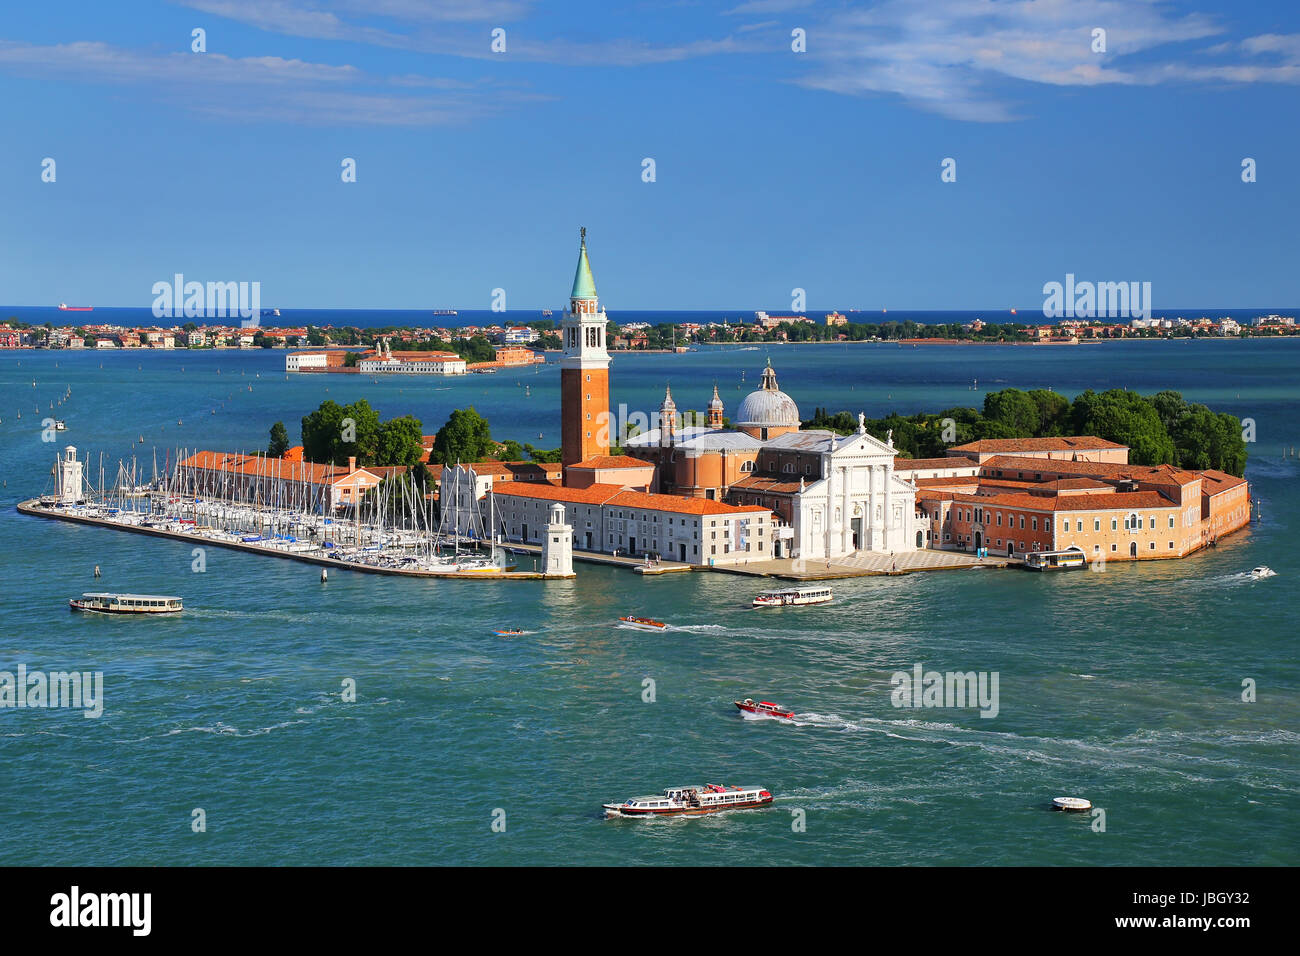 Vue aérienne de l'île de San Giorgio Maggiore à Venise, Italie. Venise est situé dans un groupe de 117 petites îles qui sont séparés par des canaux et de la l Banque D'Images